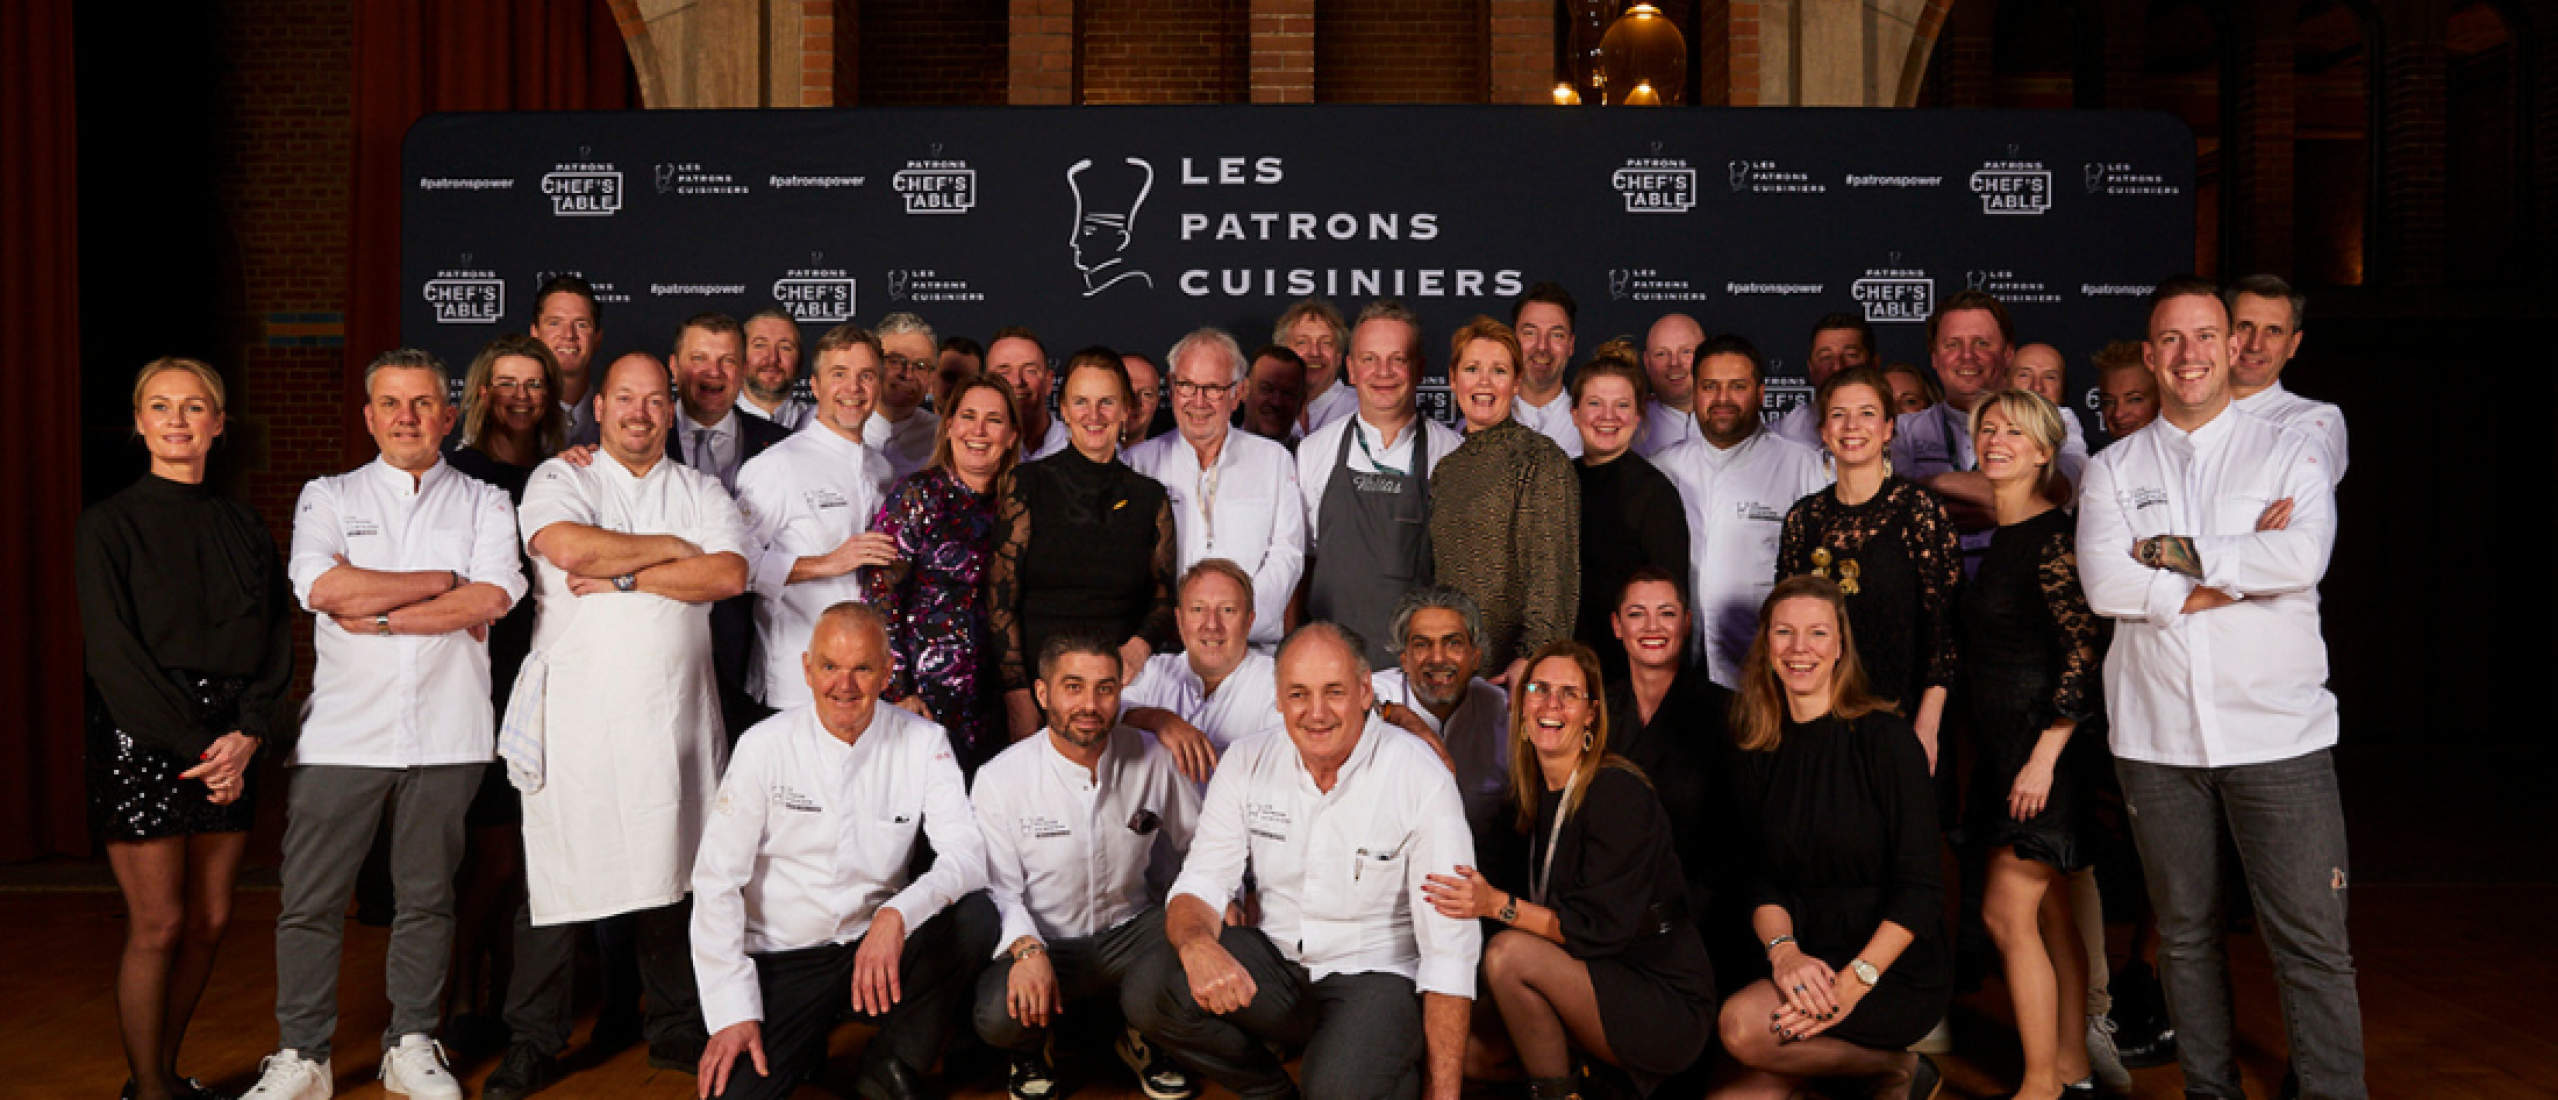 Neerlands mooiste signatuurgerechten tijdens de chef’s table van Les Patrons Cuisiniers